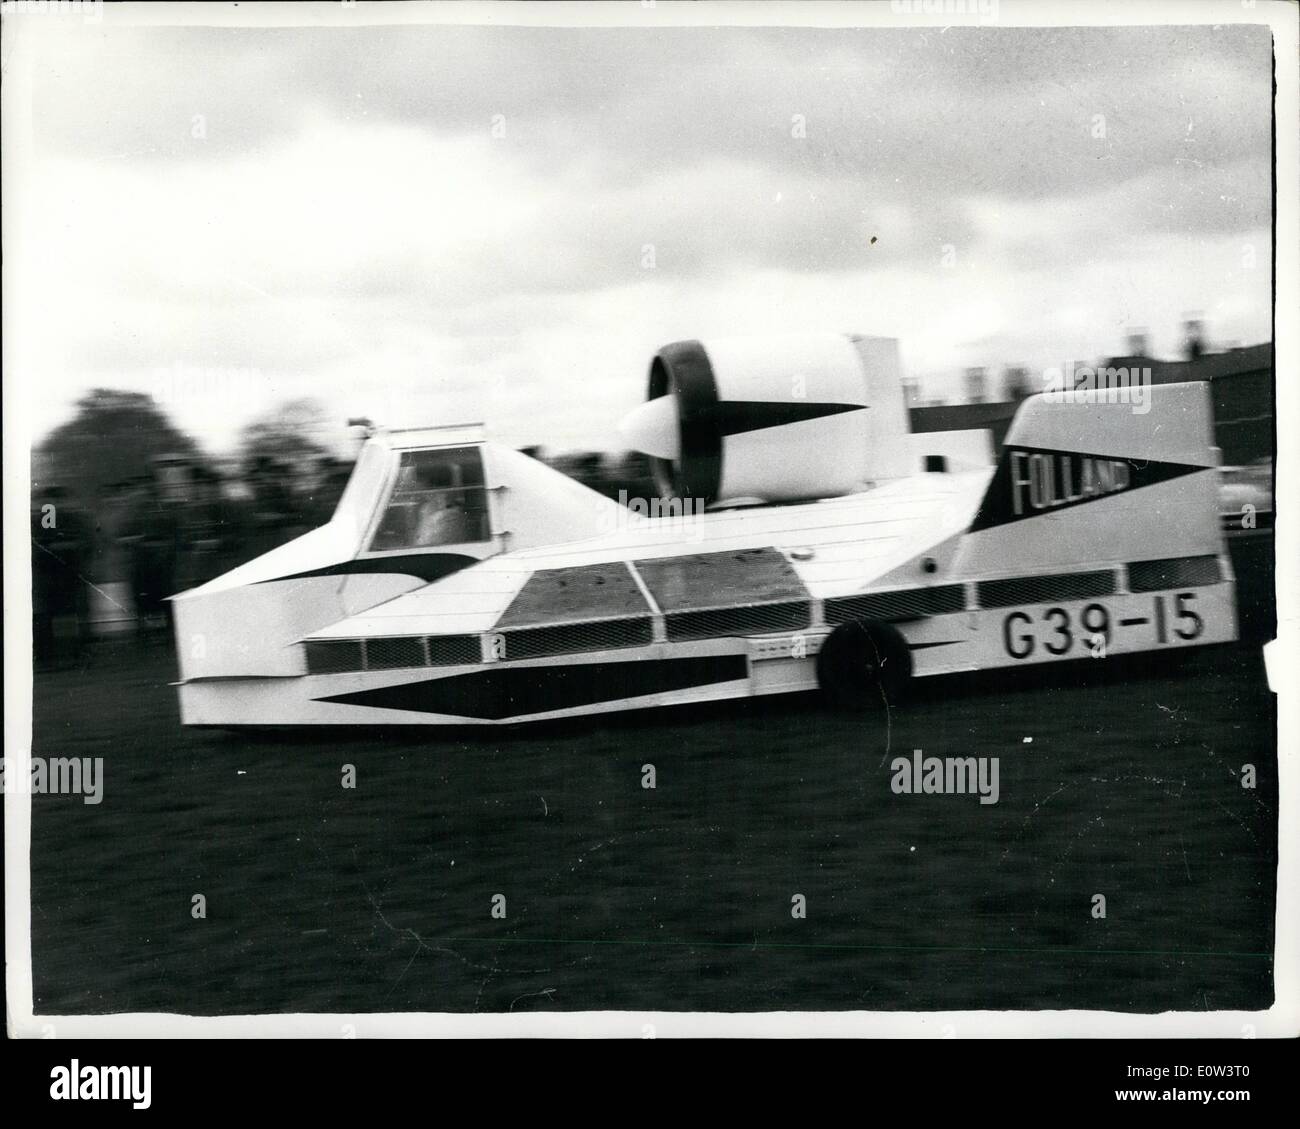 Mar 20, 1961 - 20-3-61 Nuovo Hovercraft supera la prova. Progettato per battere le paludi. La nuova macchina di Hovercraft noto come il germe (effetto suolo macchina di ricerca) dimostrati in tre minuti di dimostrazione a Imphal caserma, York., ieri che si può volare con facilità tre pollici al di sopra del terreno. Pilotato da John Chaplin (32) capo hovercraft ingegnere di sviluppo del velivolo Folland Co., la macchina è sostenuto di essere un valore inestimabile per l'esercito per attraversare fiumi marche e altri ostacoli che tenere presente giorno per il trasporto militare. Esso è alimentato da due 700 c.c. Royal Enfield motori a ciclo Foto Stock